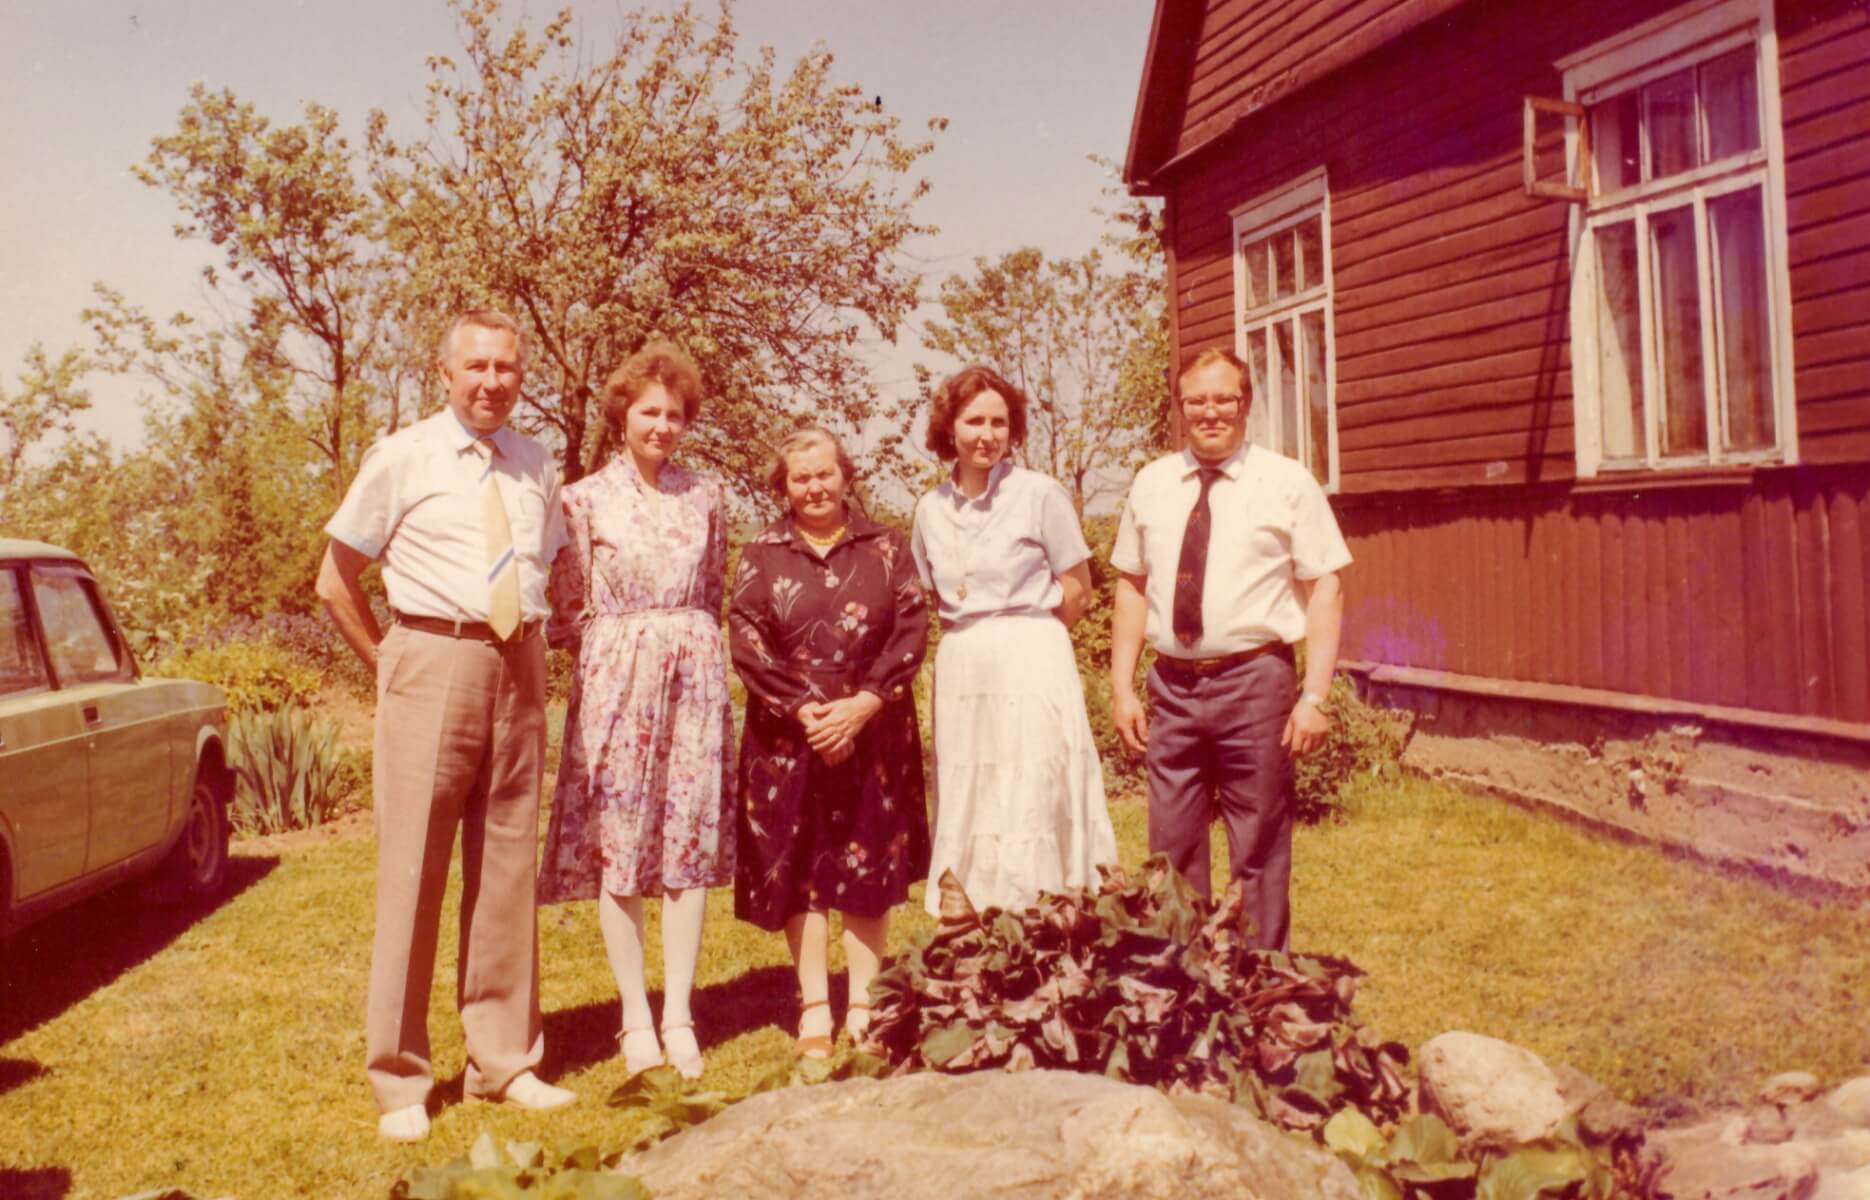 Kupiškio r. Kunderių kaime. Iš kairės Leonas Apšega, sesuo Stasė, mama Ona, sesuo Danutė ir brolis Vladas